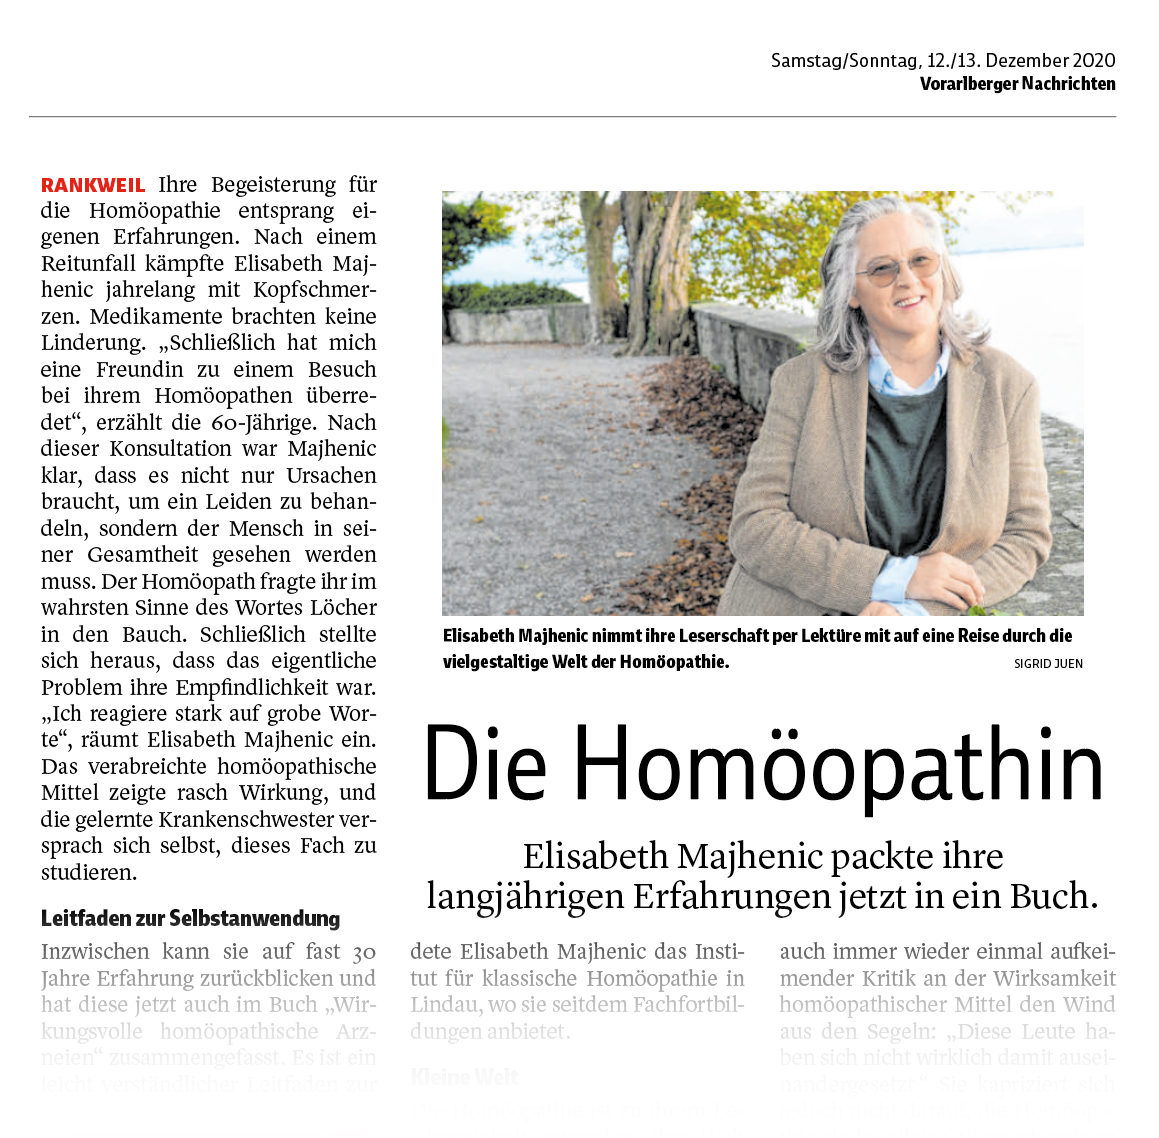 Elisabeth Majhenic packt ihre langjährige Homöopathie-Erfahrung jetzt in ein Buch.